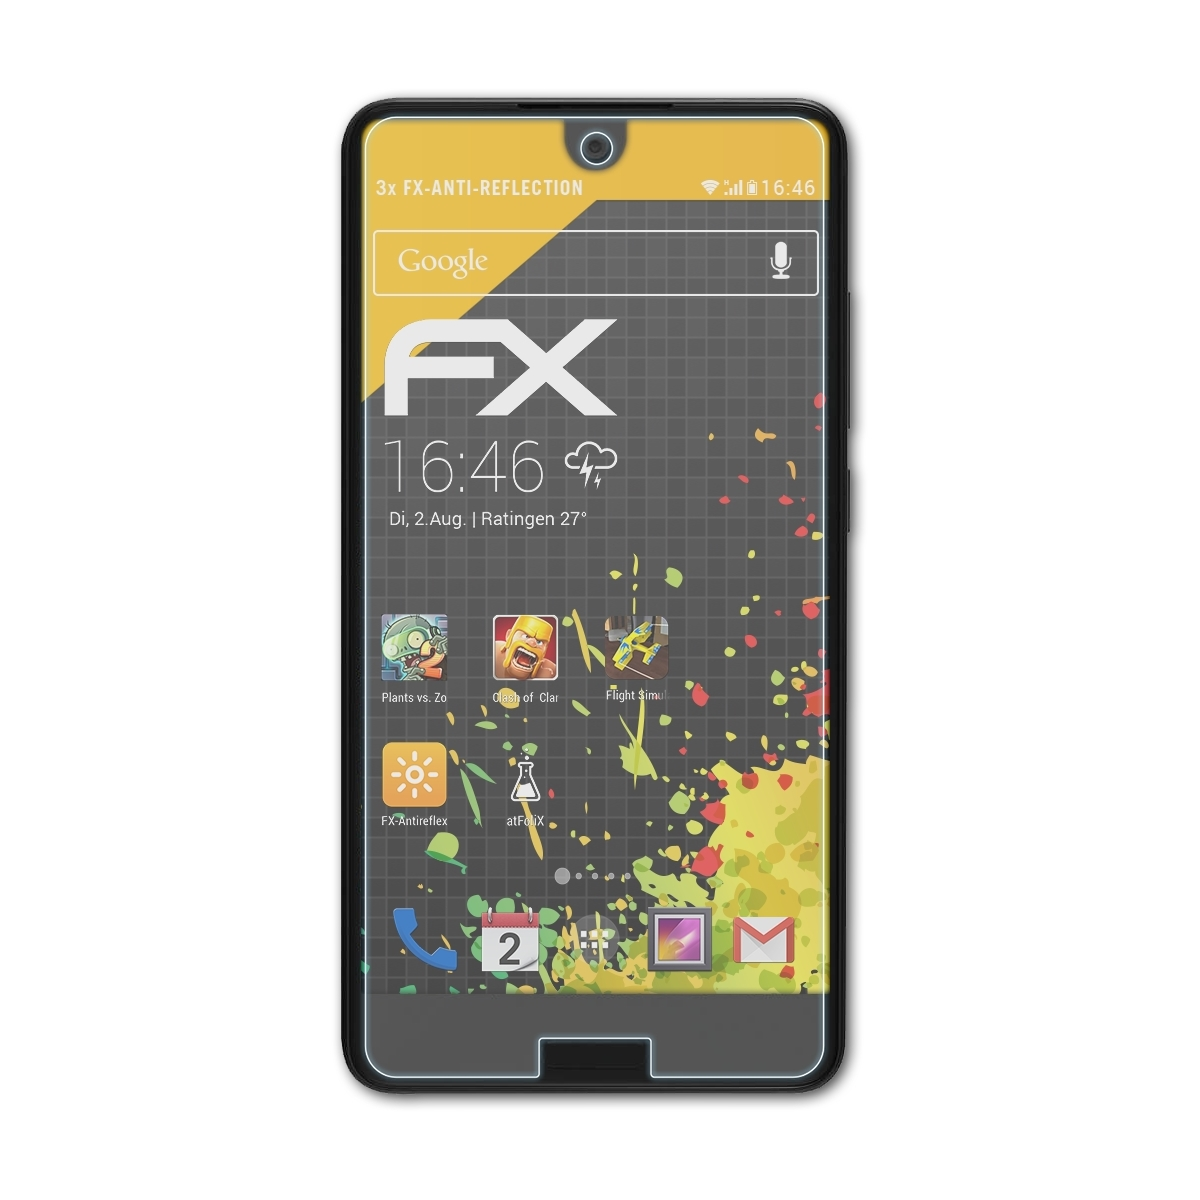 ATFOLIX 3x FX-Antireflex Aquos Displayschutz(für Sharp C10)